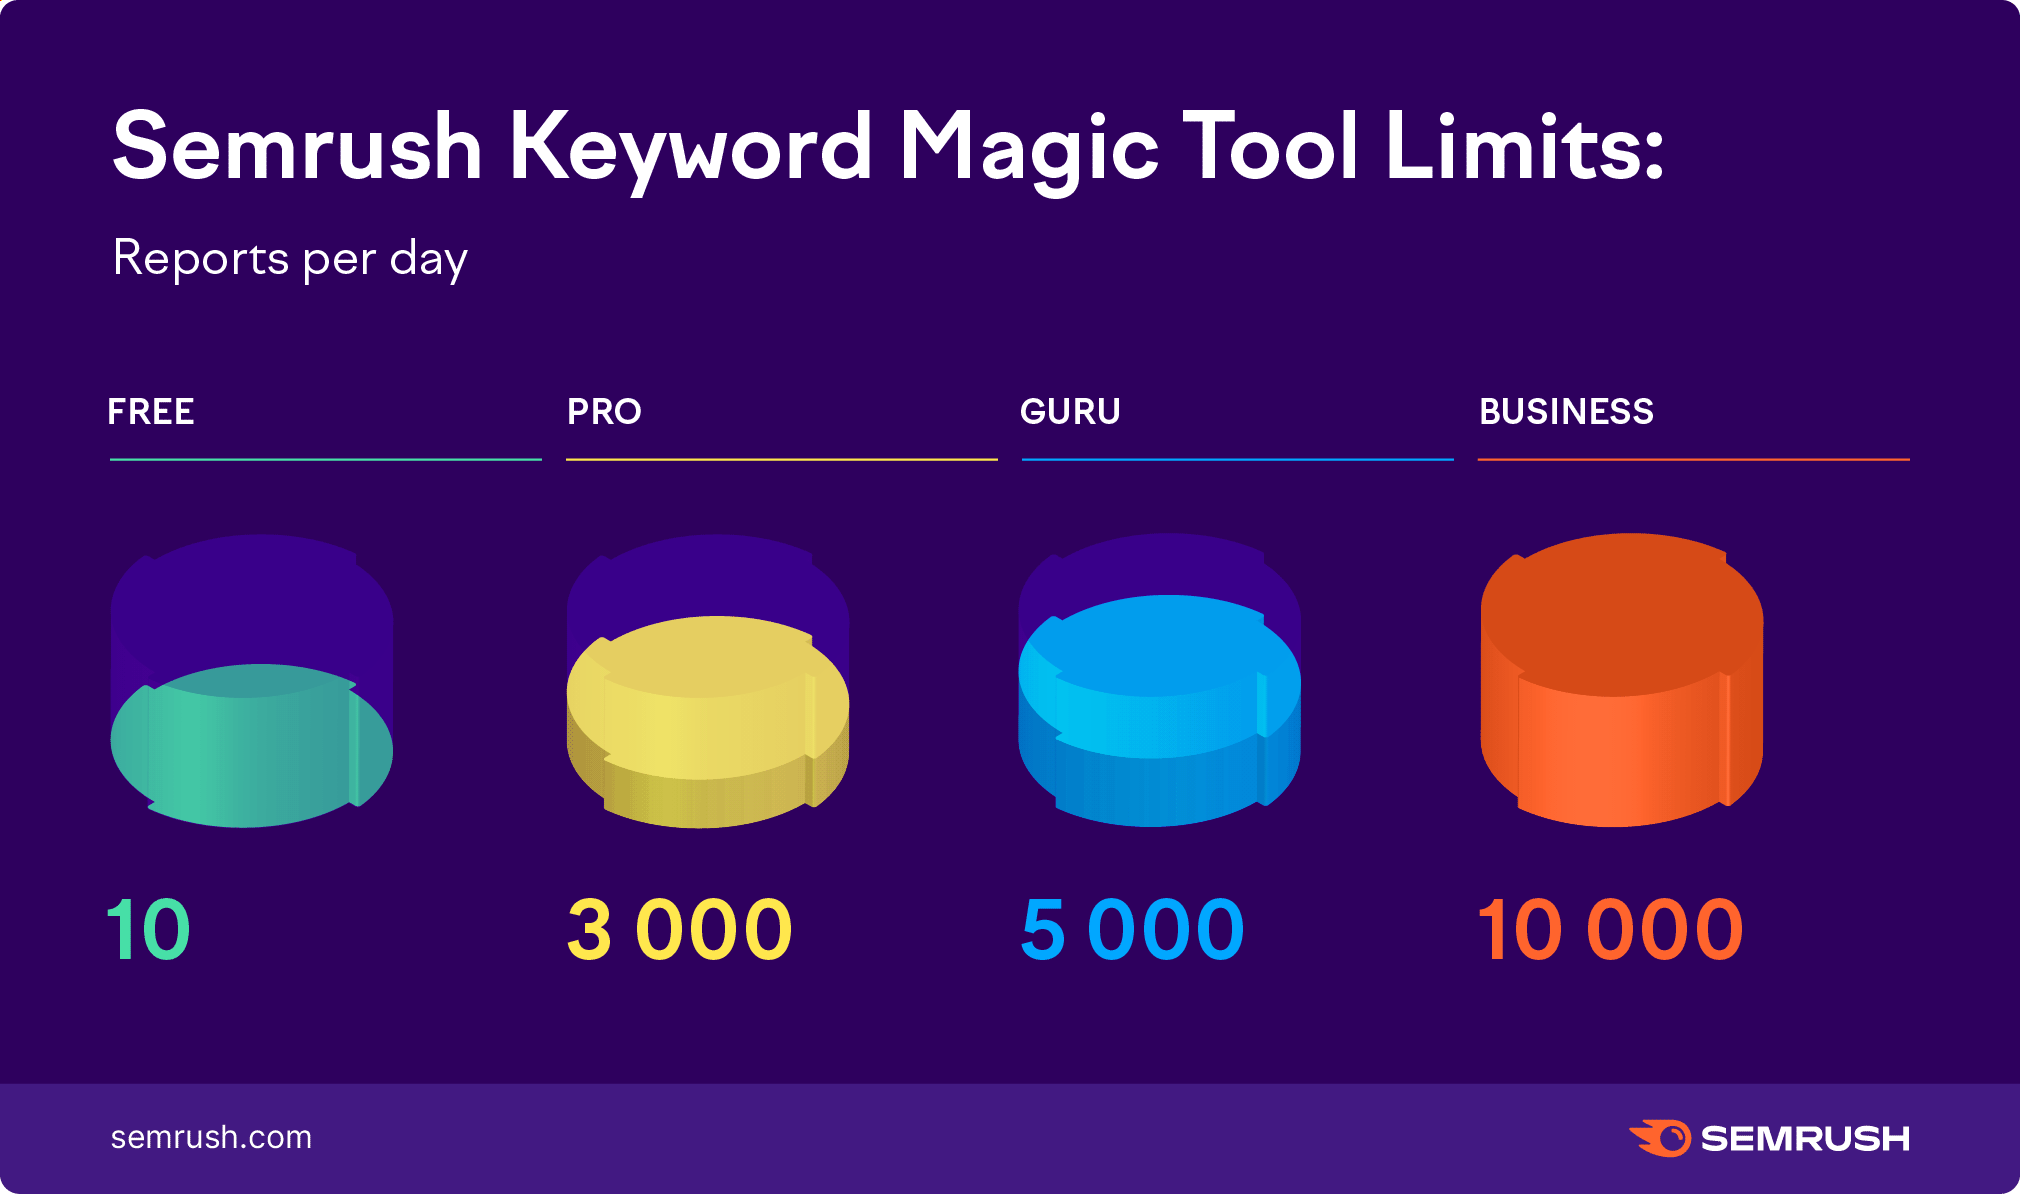 Limiti di Keyword Magic Tool di Semrush: report al giorno. Piano gratuito - 10, Pro - 3000, Guru - 5000, Business - 10.000. 